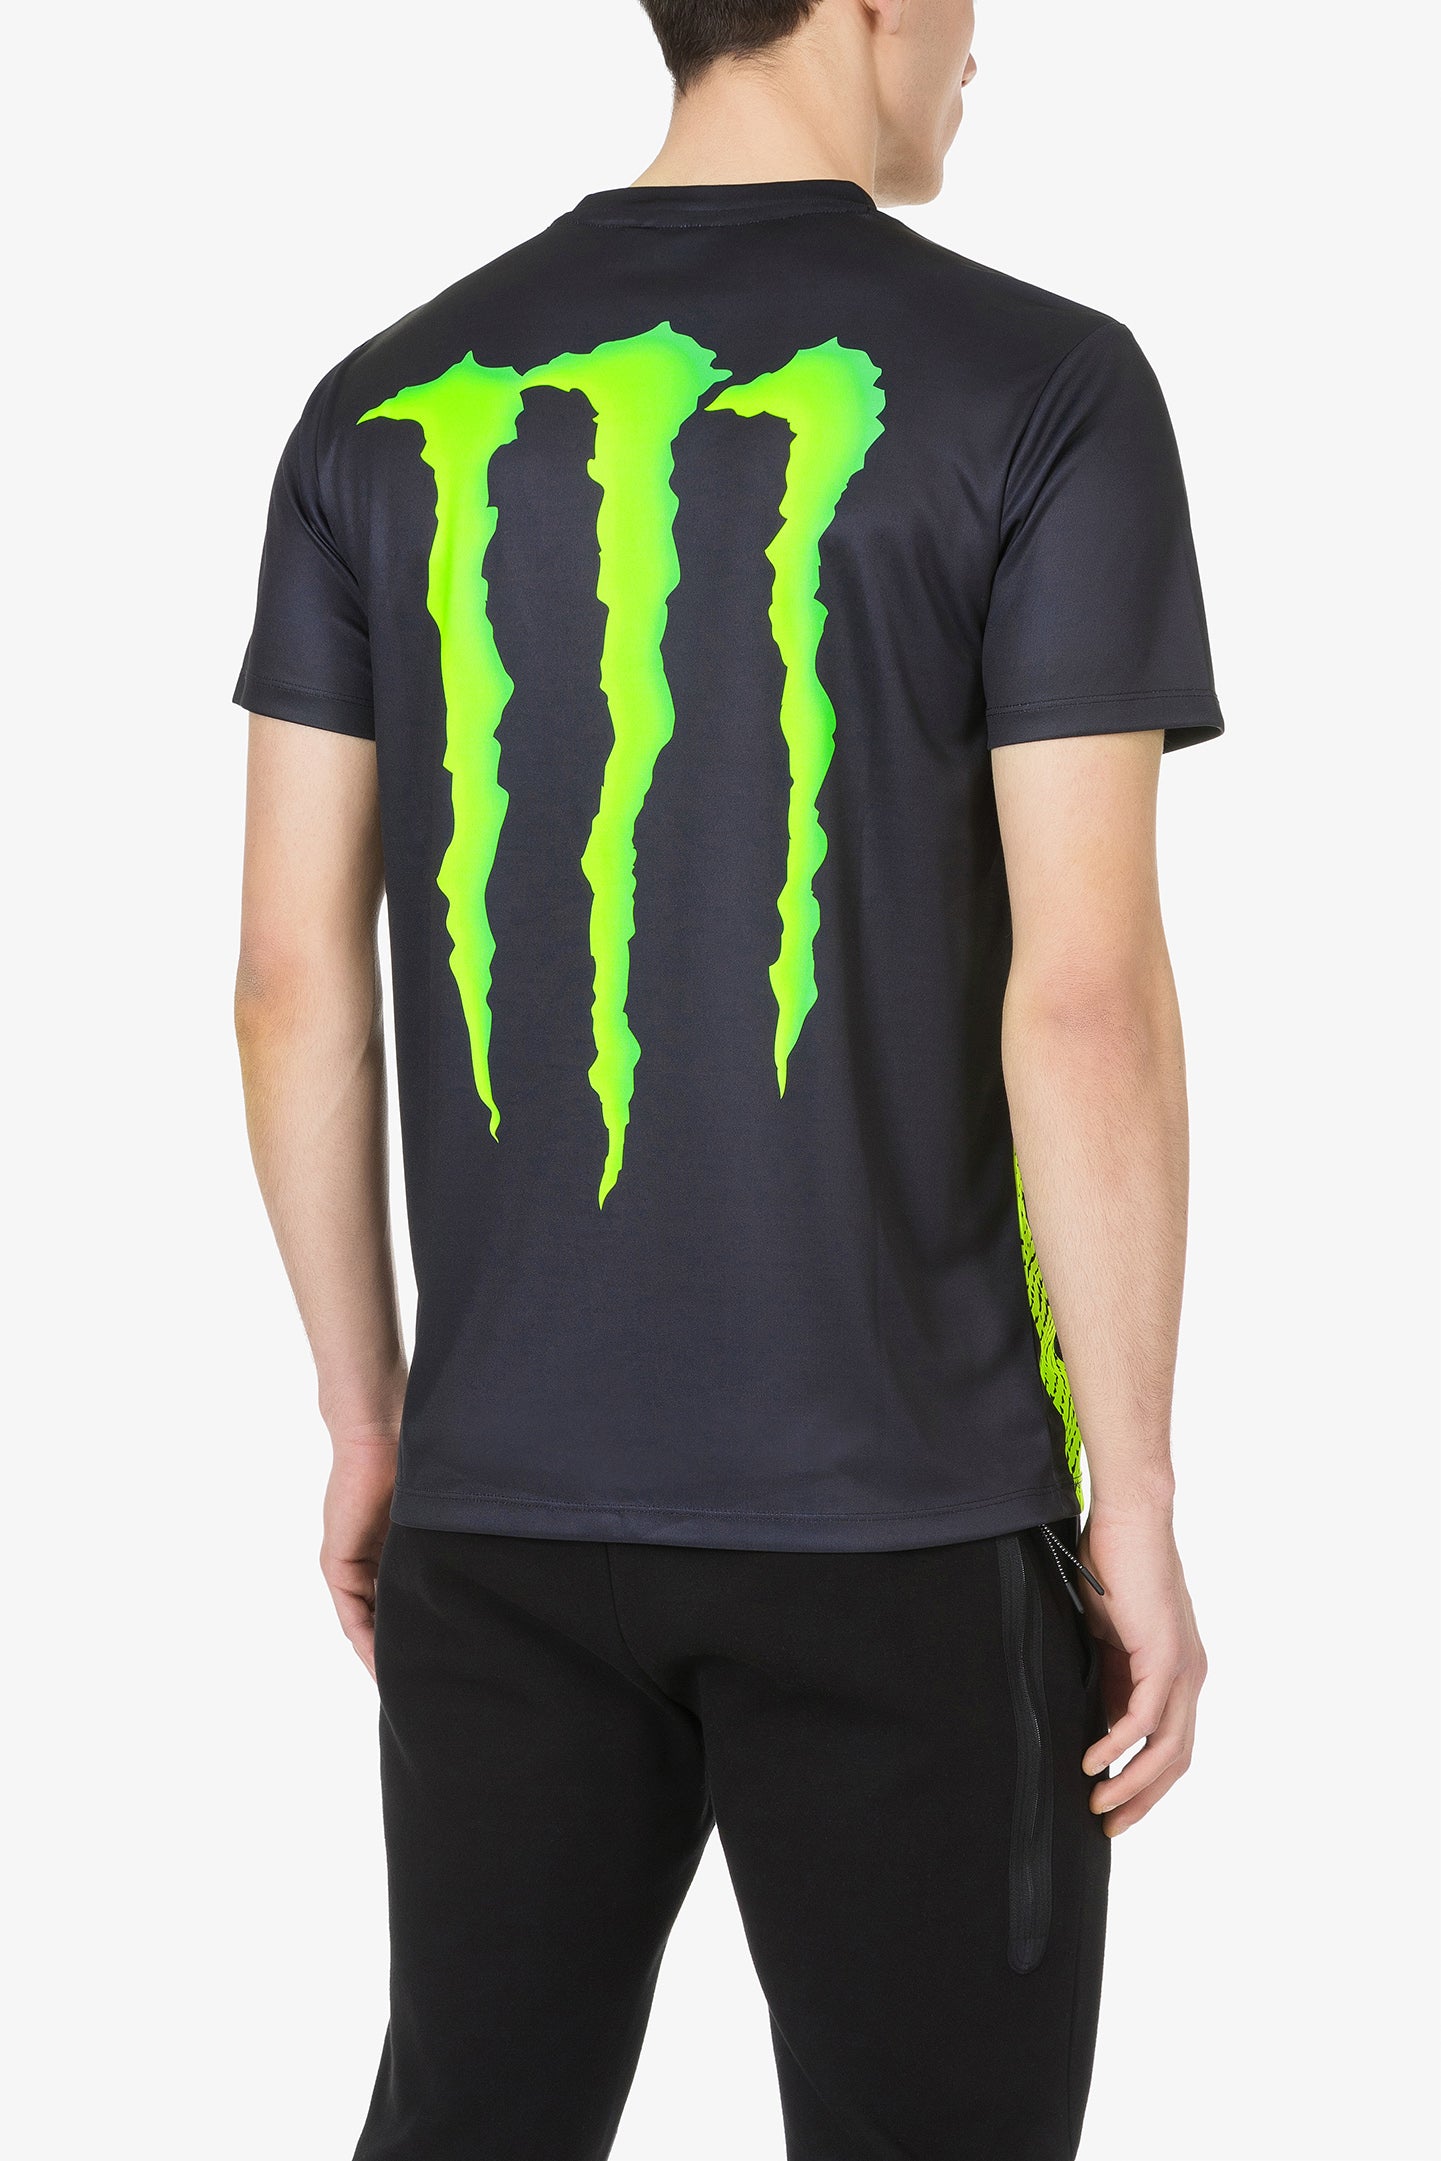 46 Monster Energy t-shirt